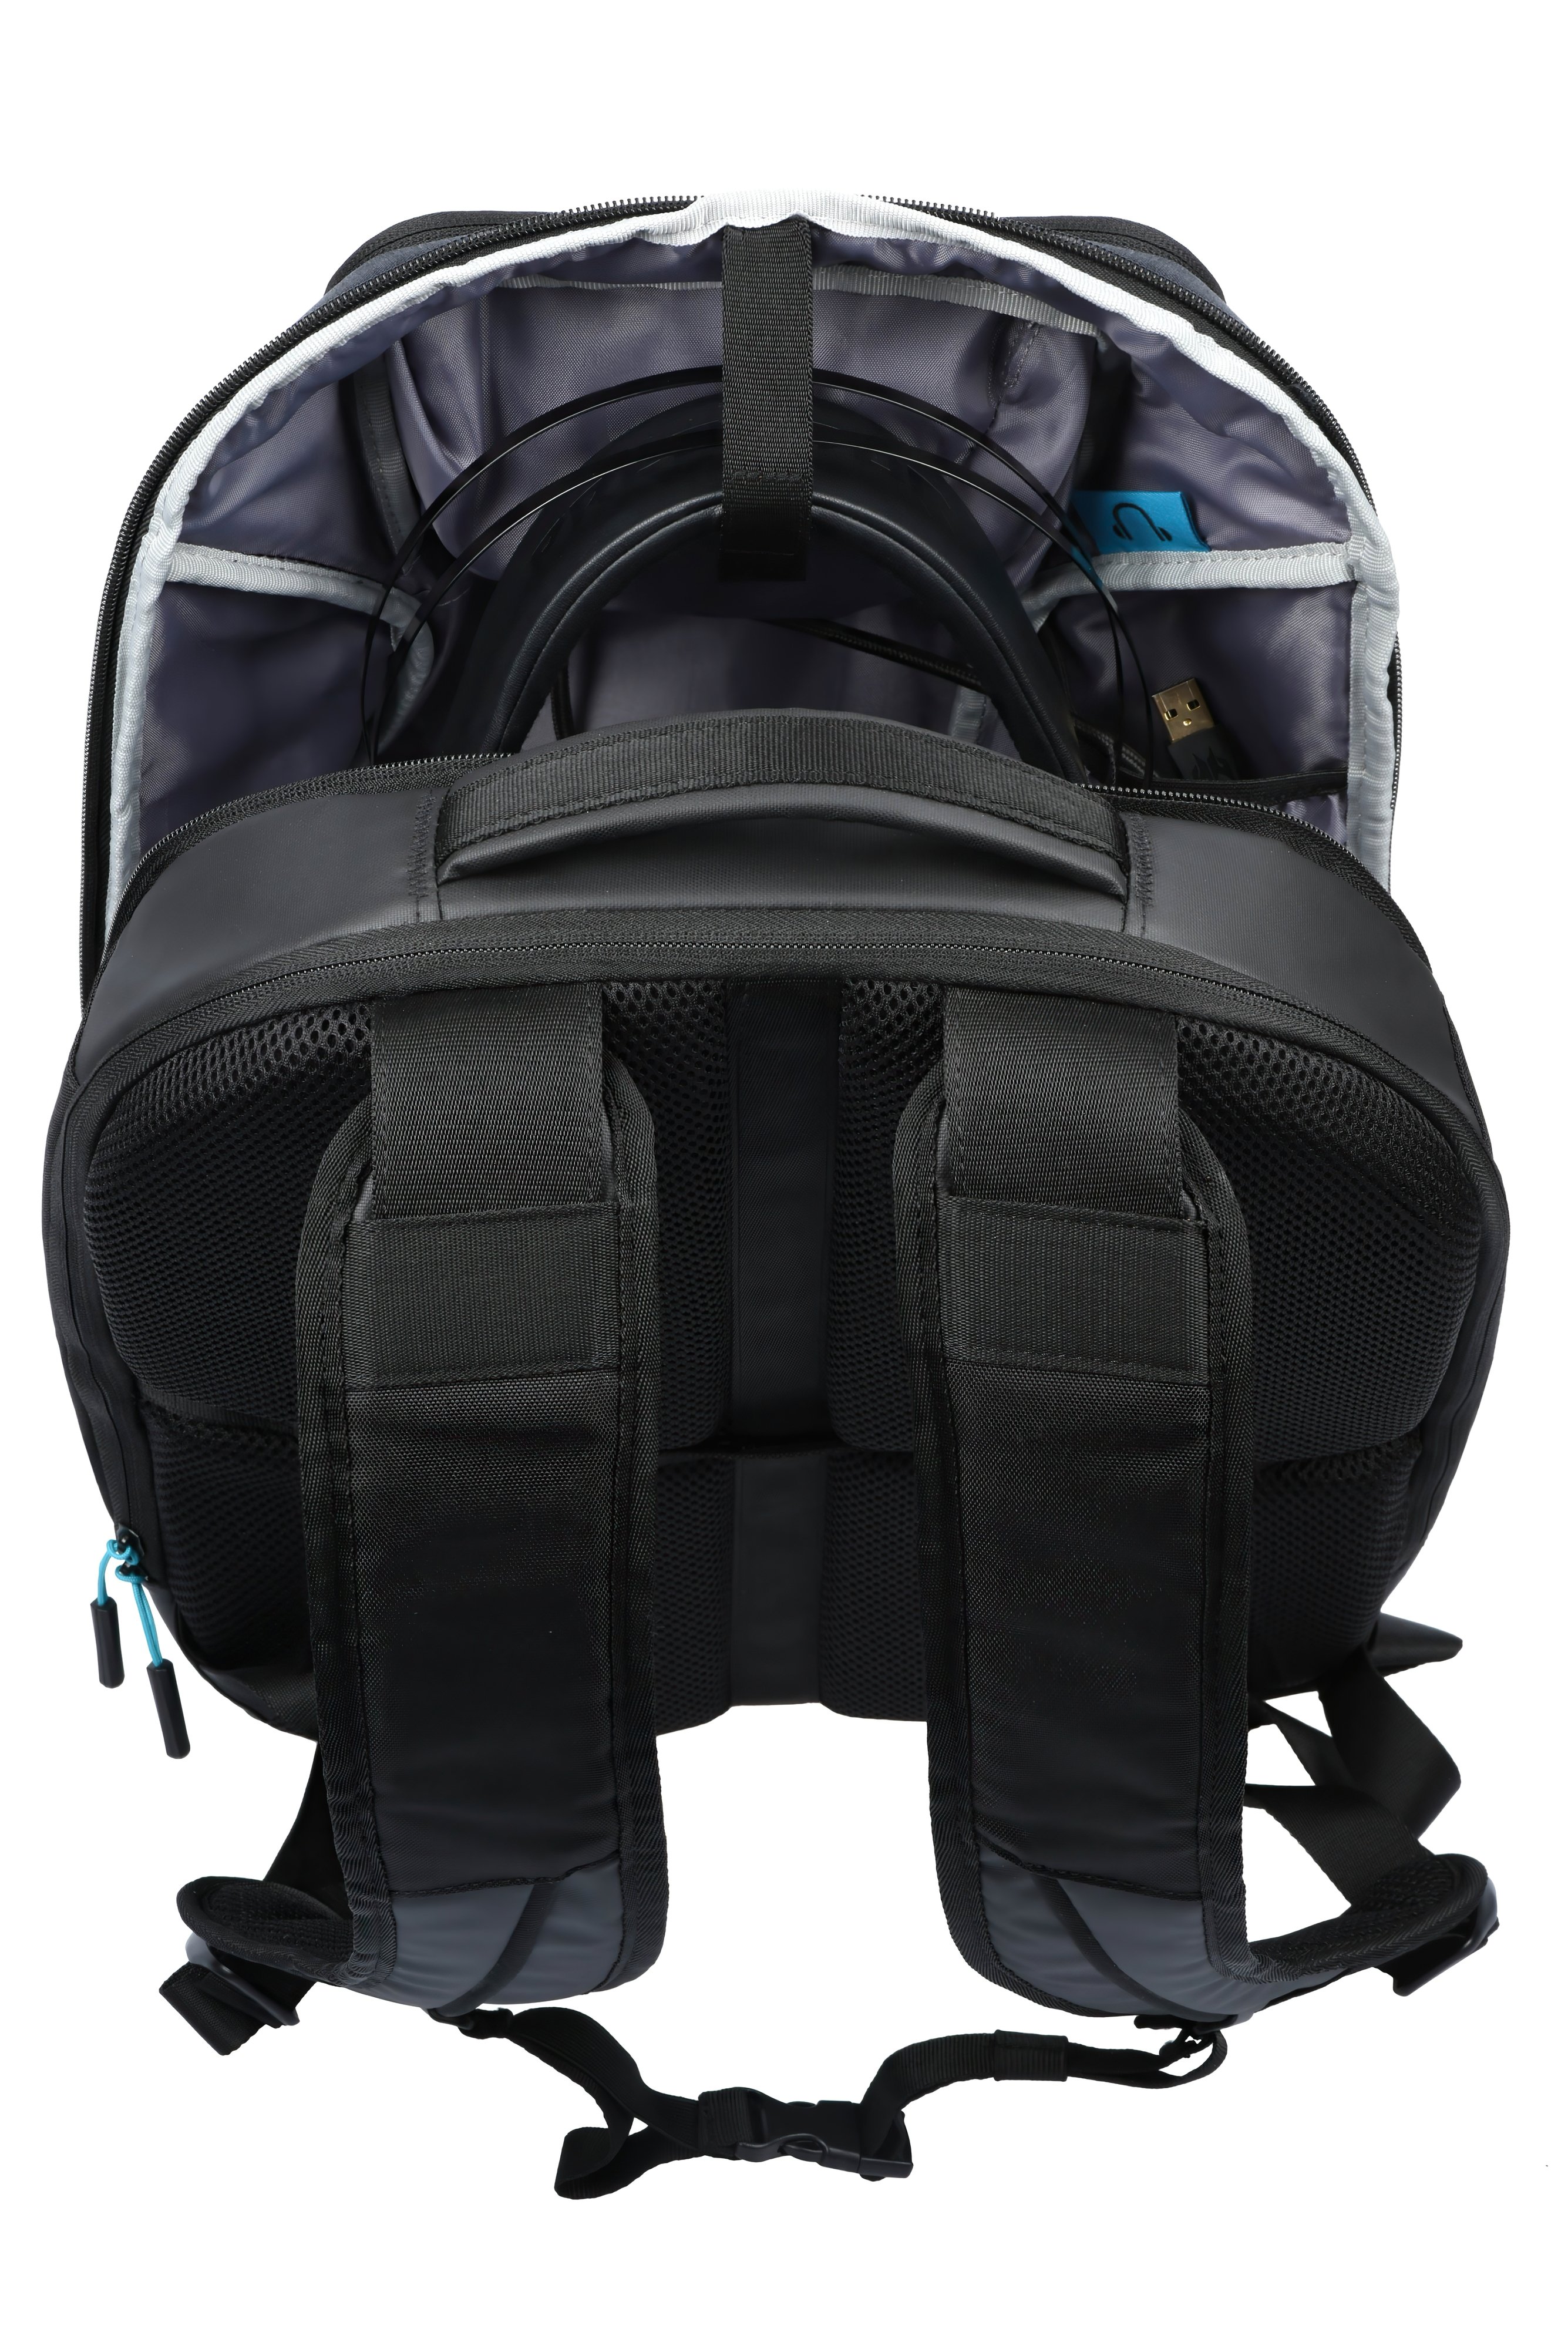 Рюкзак Acer PREDATOR HYBRID 15.6" Black with teal blue фото 13